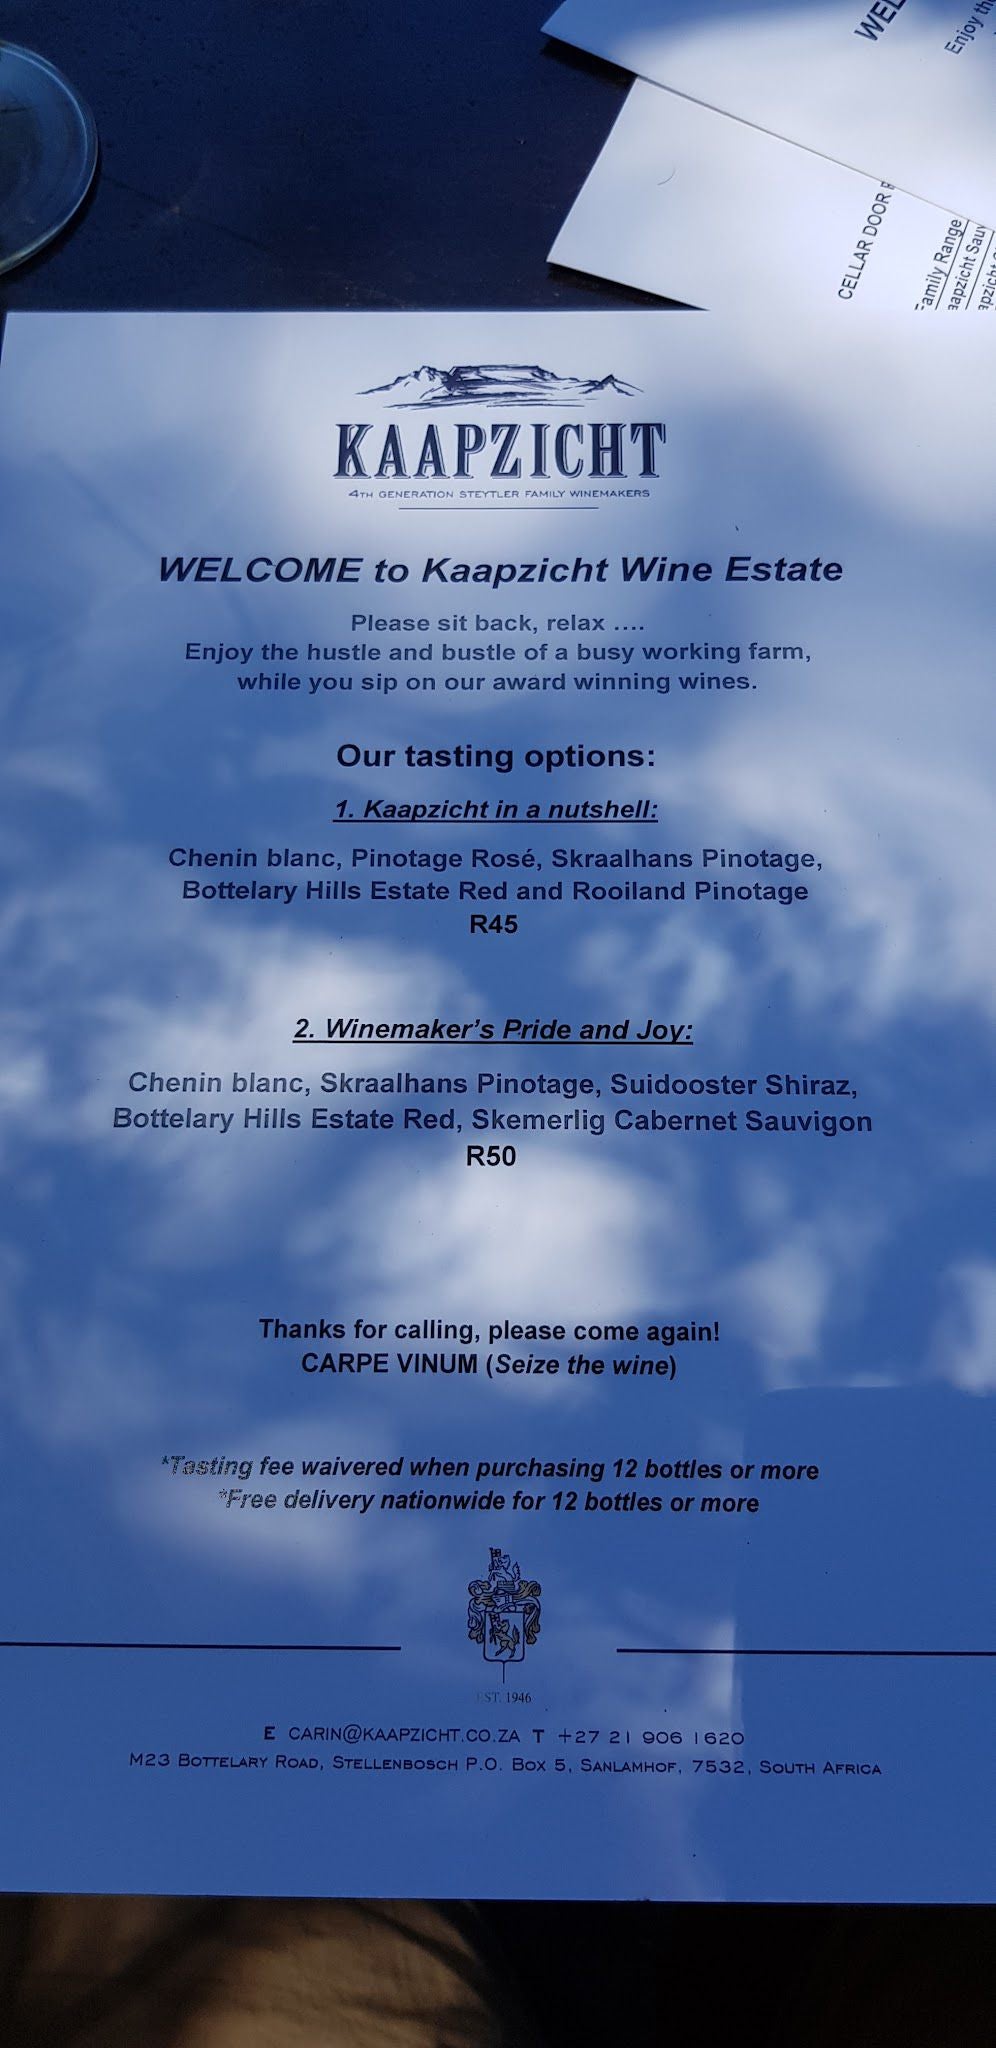  Kaapzicht Wine Estate